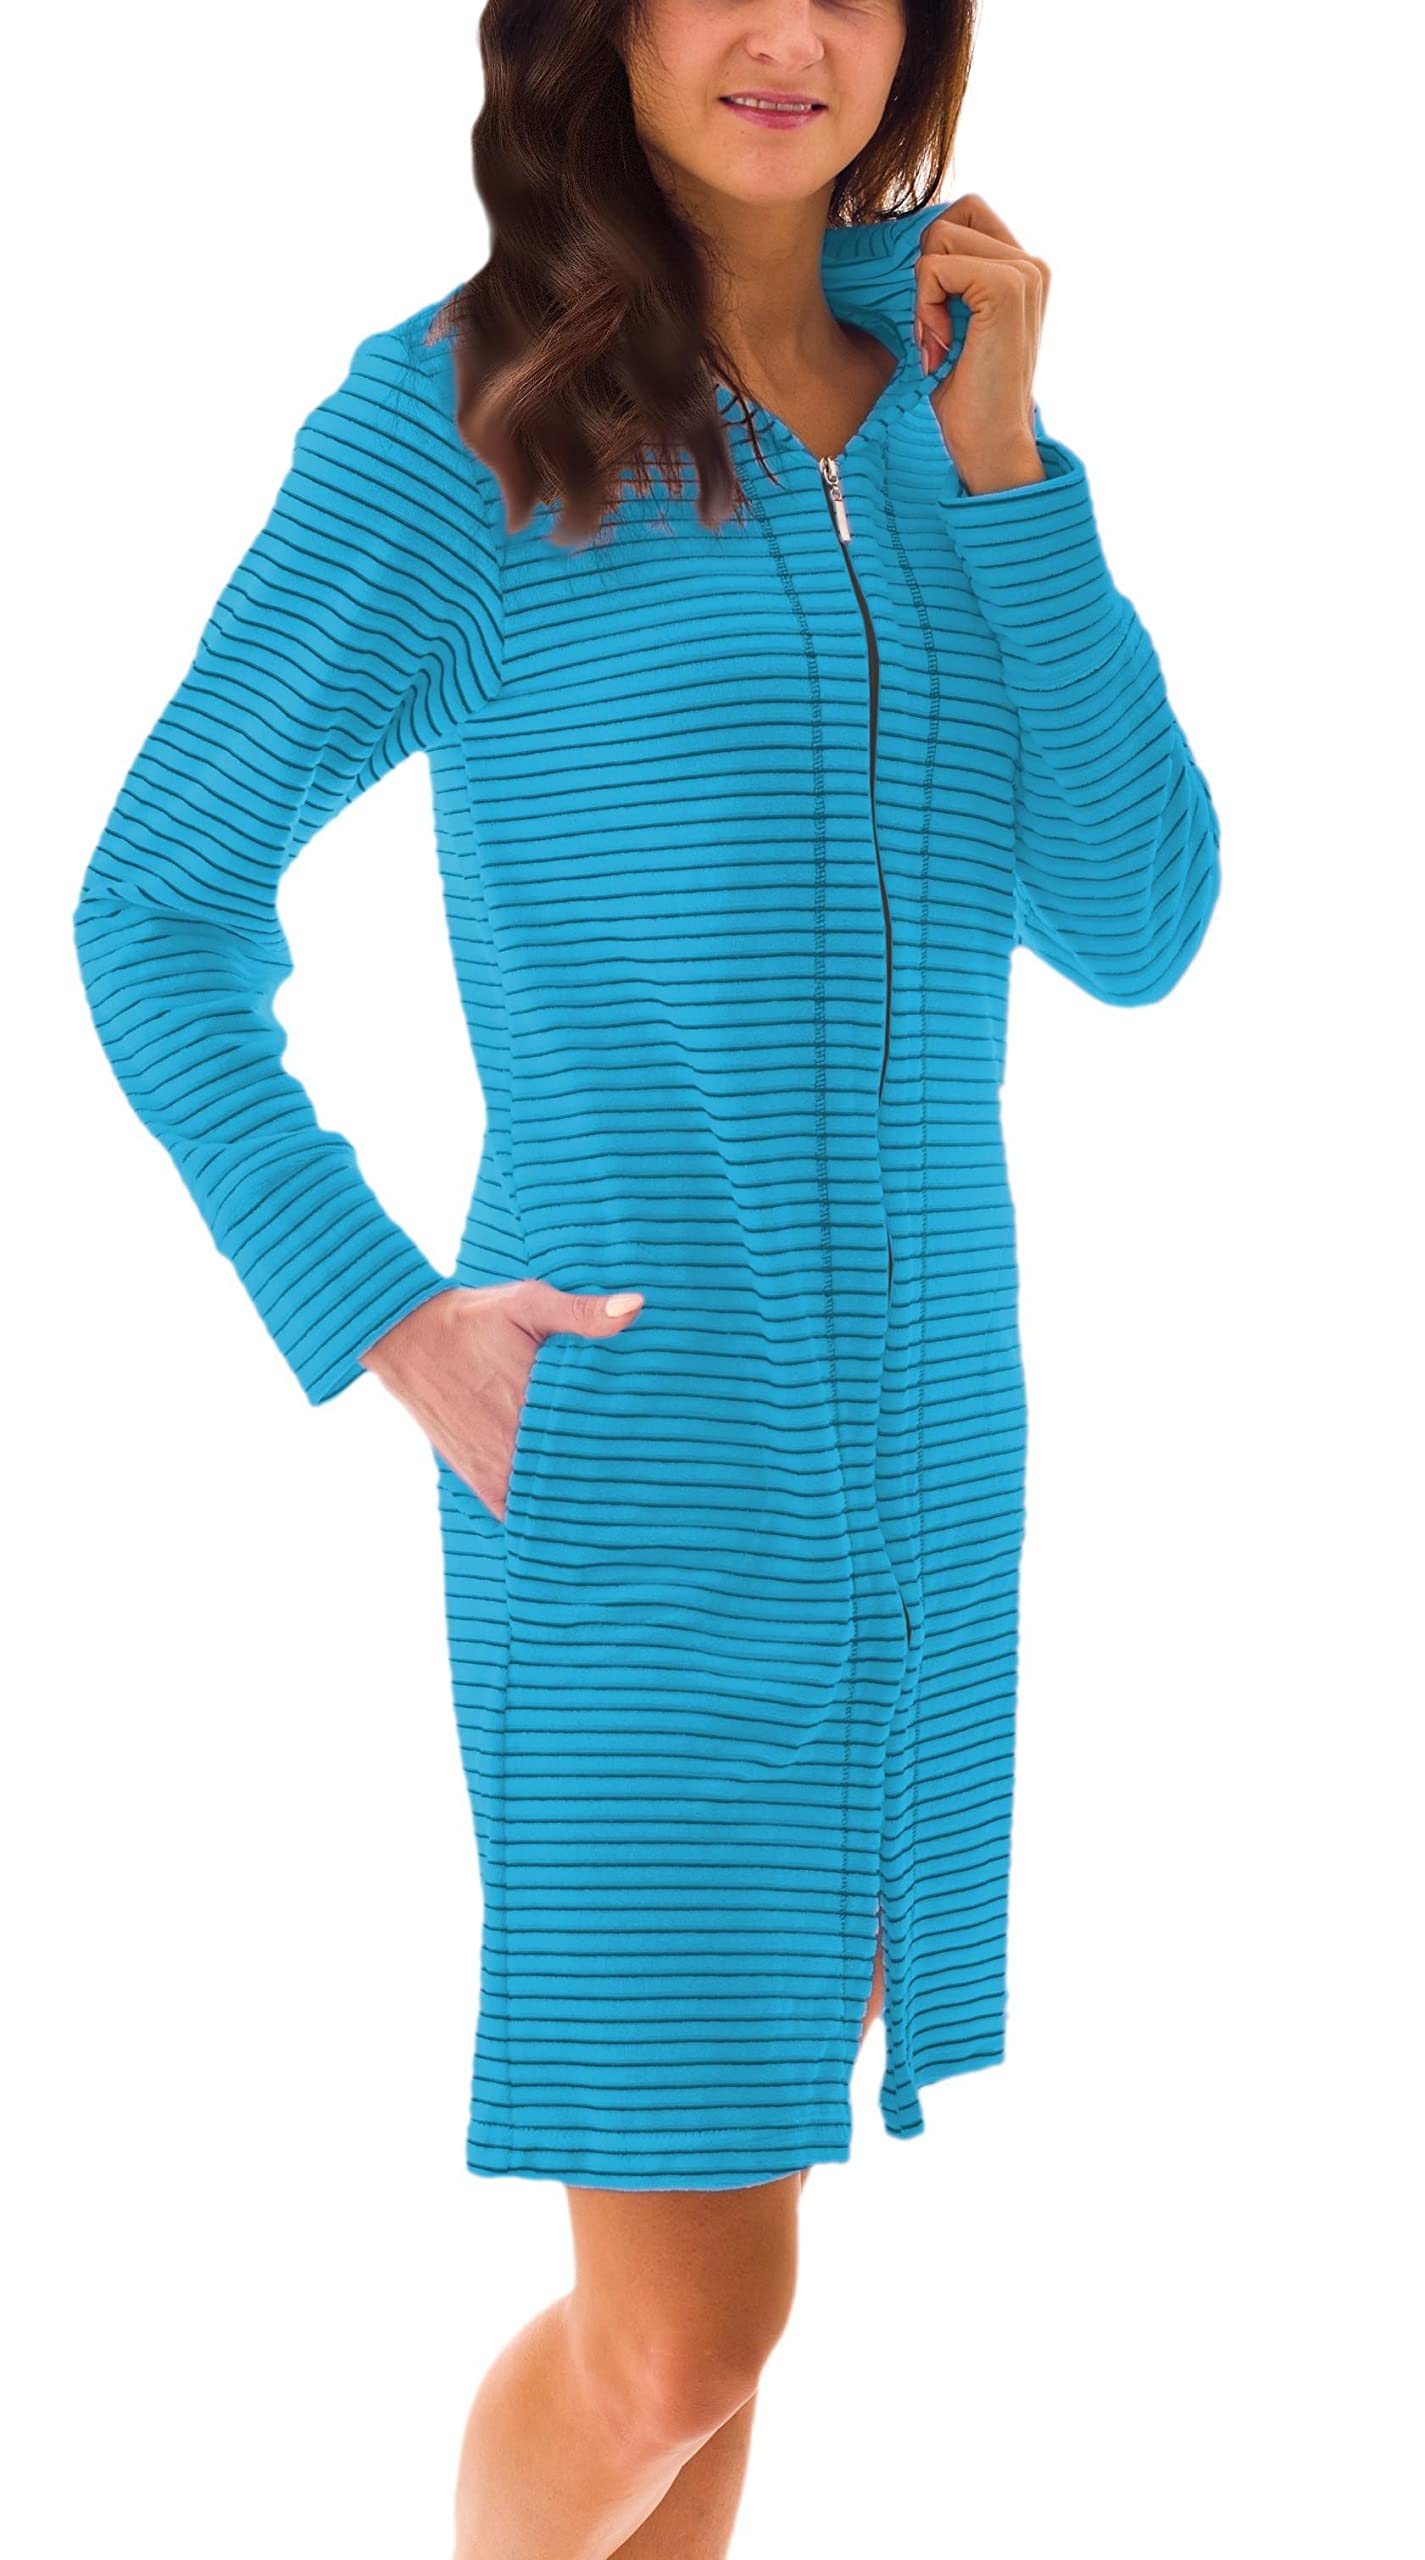 Aquarti Damen Bademantel Morgenmantel mit Reißverschluss Streifen Kurz Baumwolle, Farbe: Streifenmuster Türkis, Größe: S